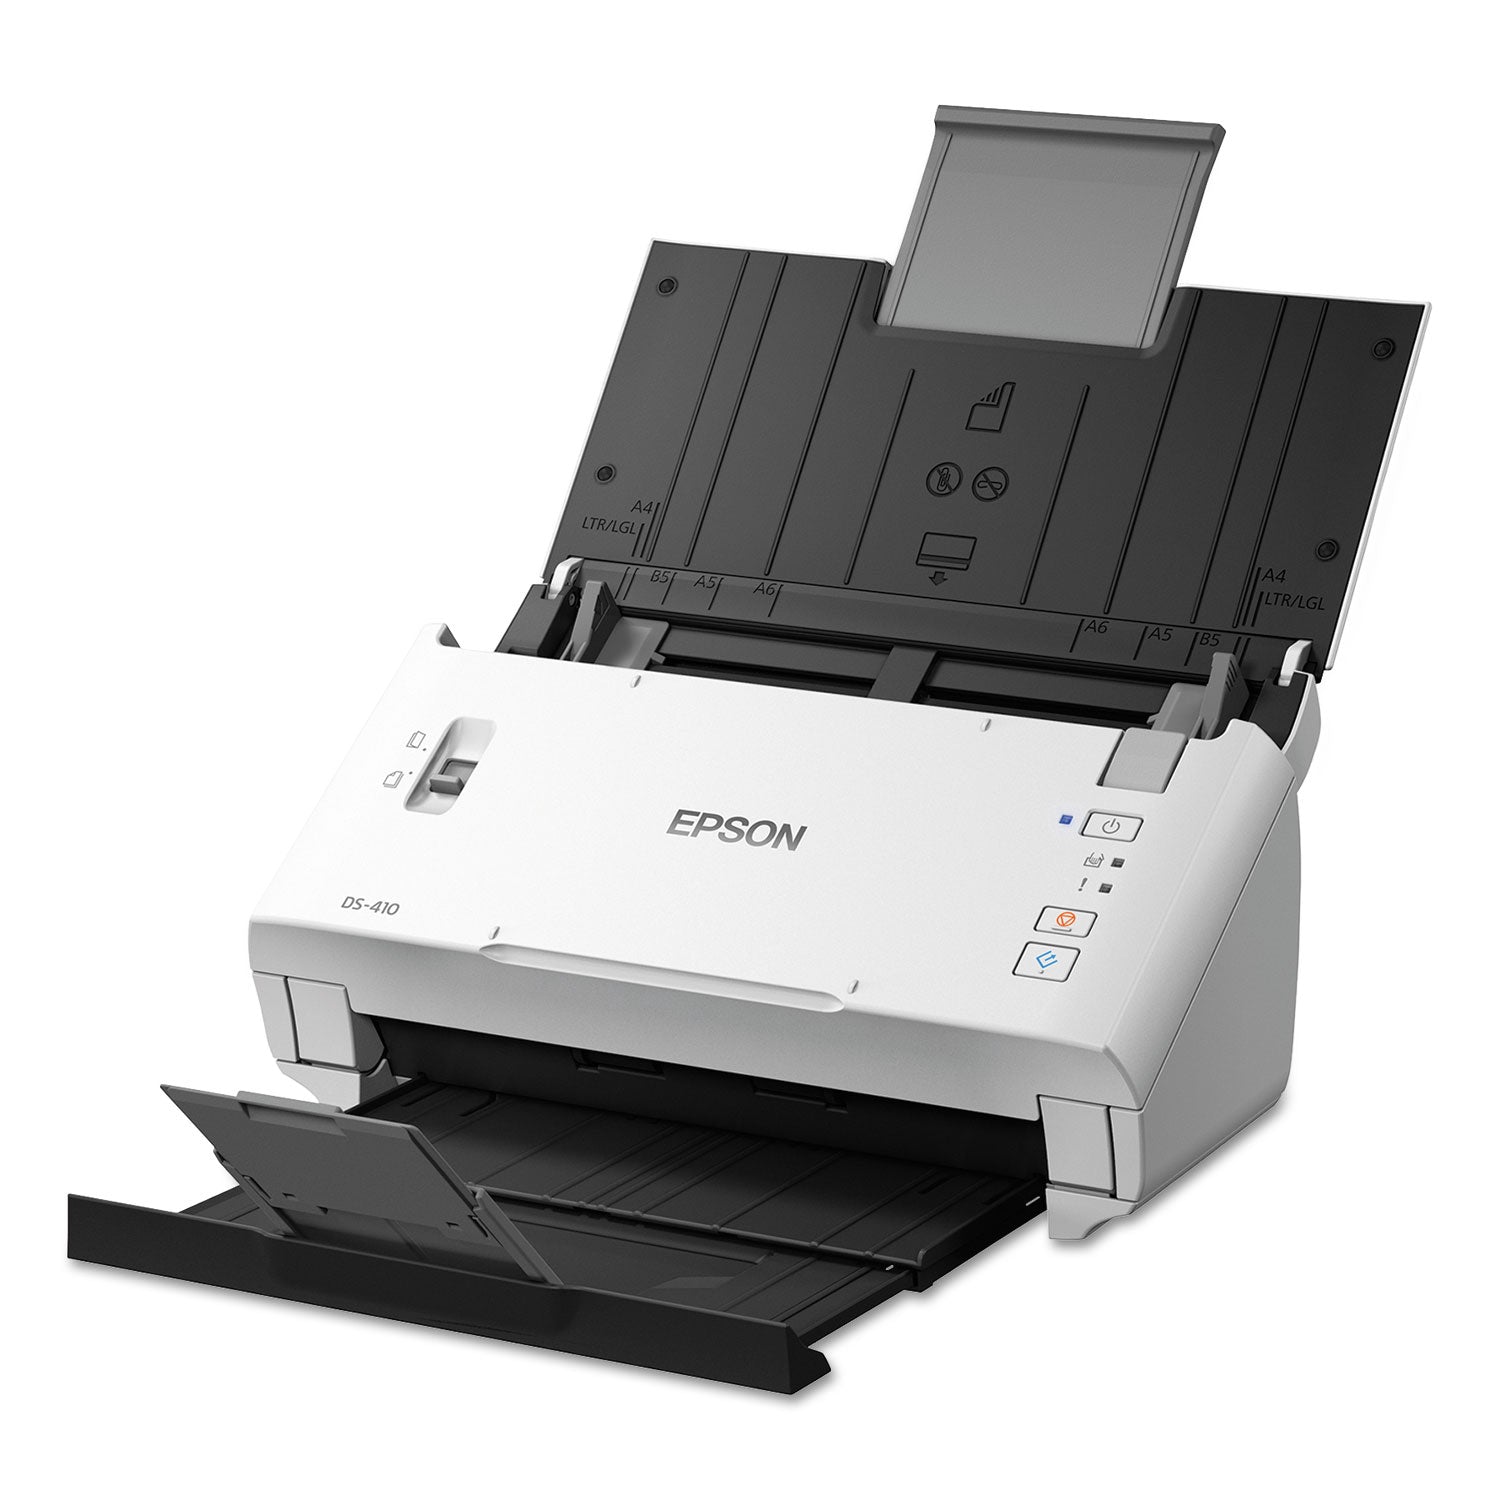 ds-410-document-scanner-600-dpi-optical-resolution-50-sheet-duplex-auto-document-feeder_epsb11b249201 - 6